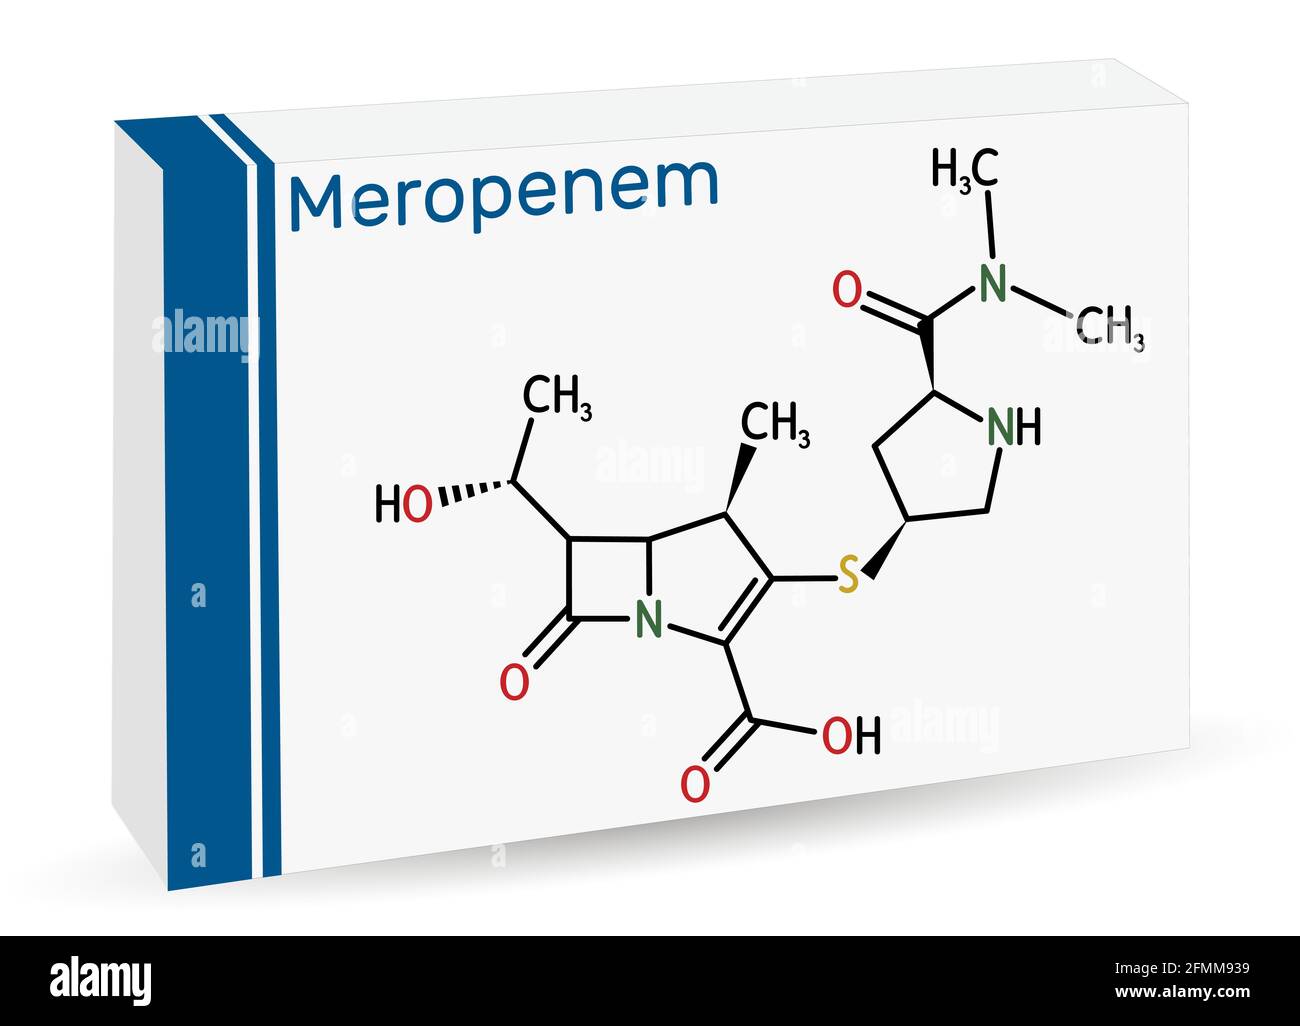 Meropenem-Molekül. Es ist ein Breitband-Carbapenem-Antibiotikum. Skelett chemische Formel . Papierverpackungen für Medikamente. Vektorgrafik Stock Vektor